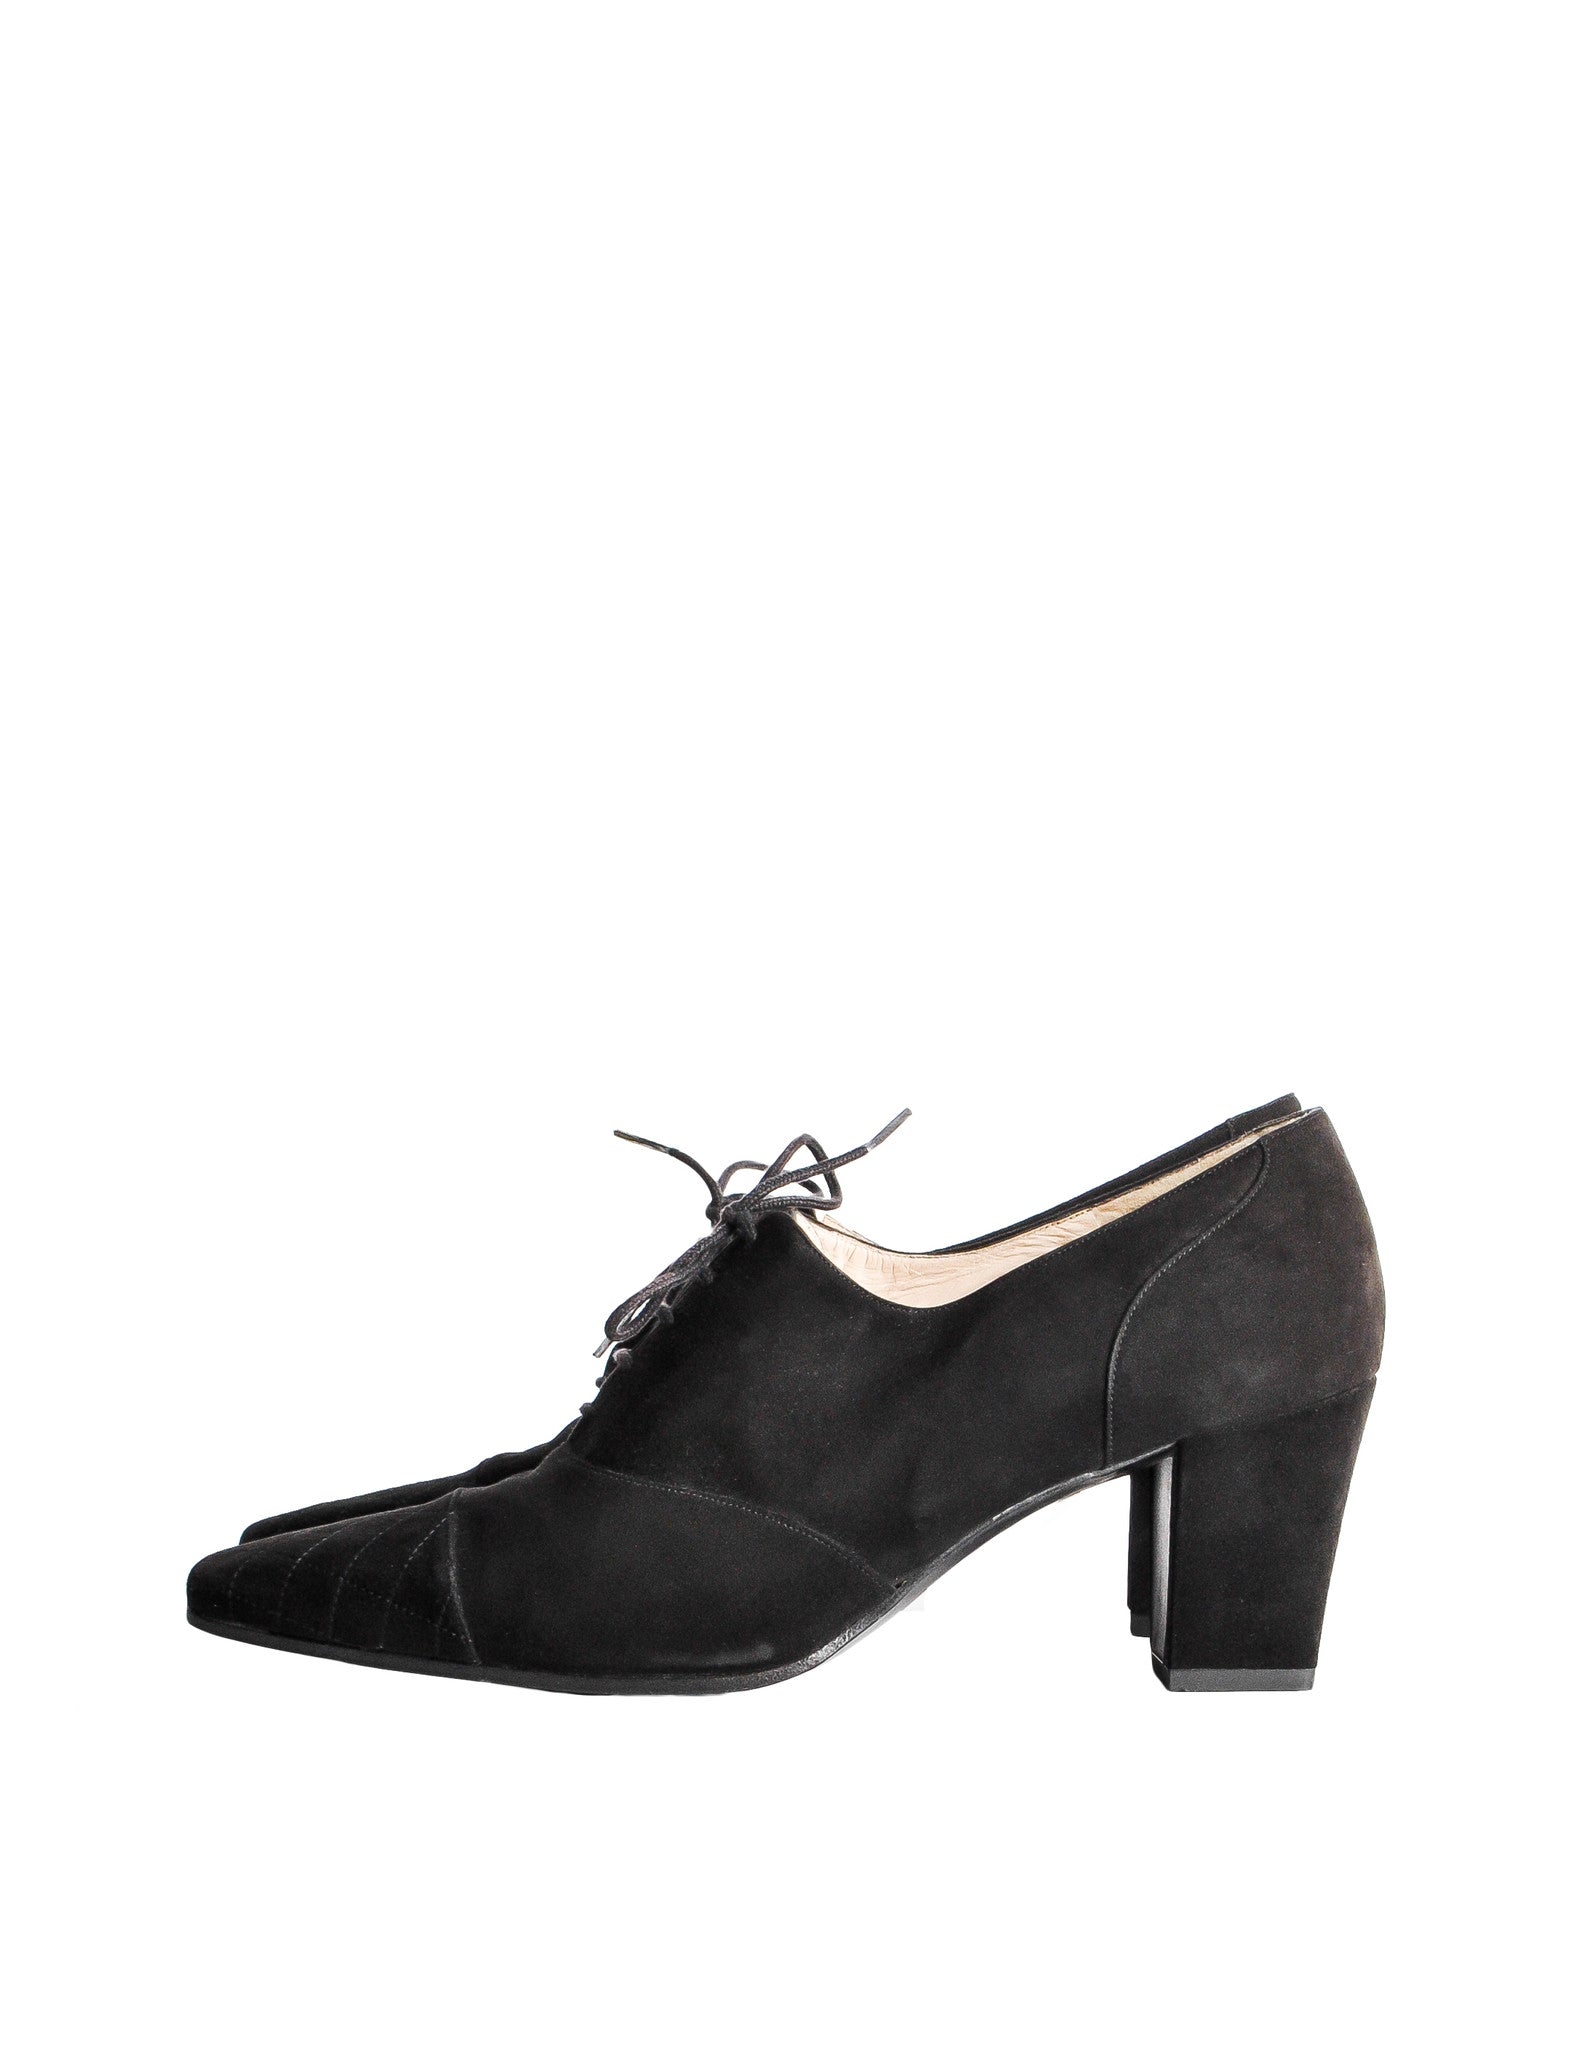 vintage style oxford heels